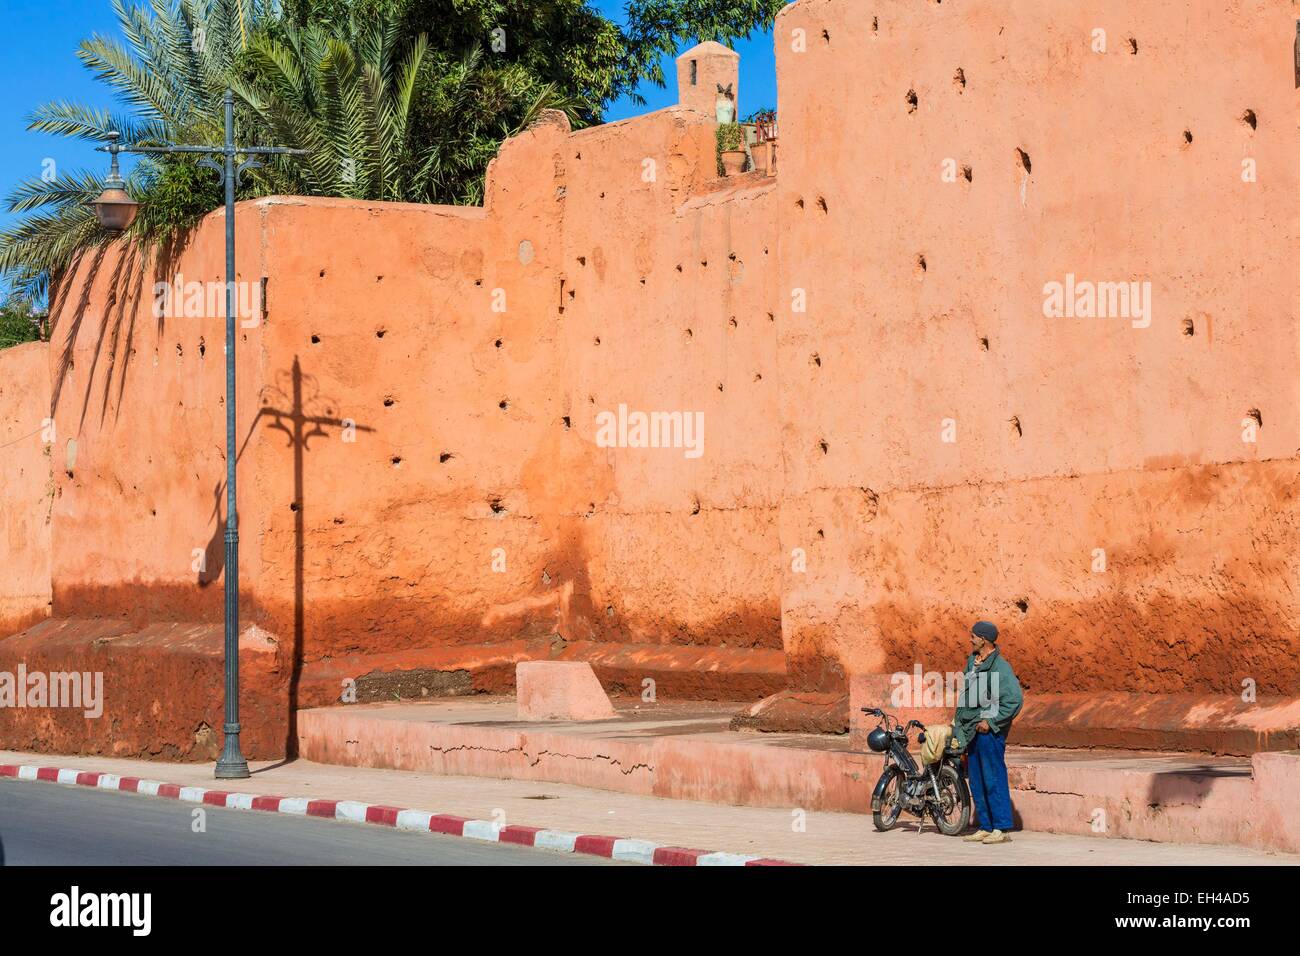 Le Maroc, Haut Atlas, Marrakech, ville impériale mur autour de la médina (Site du patrimoine mondial de l'UNESCO) Banque D'Images